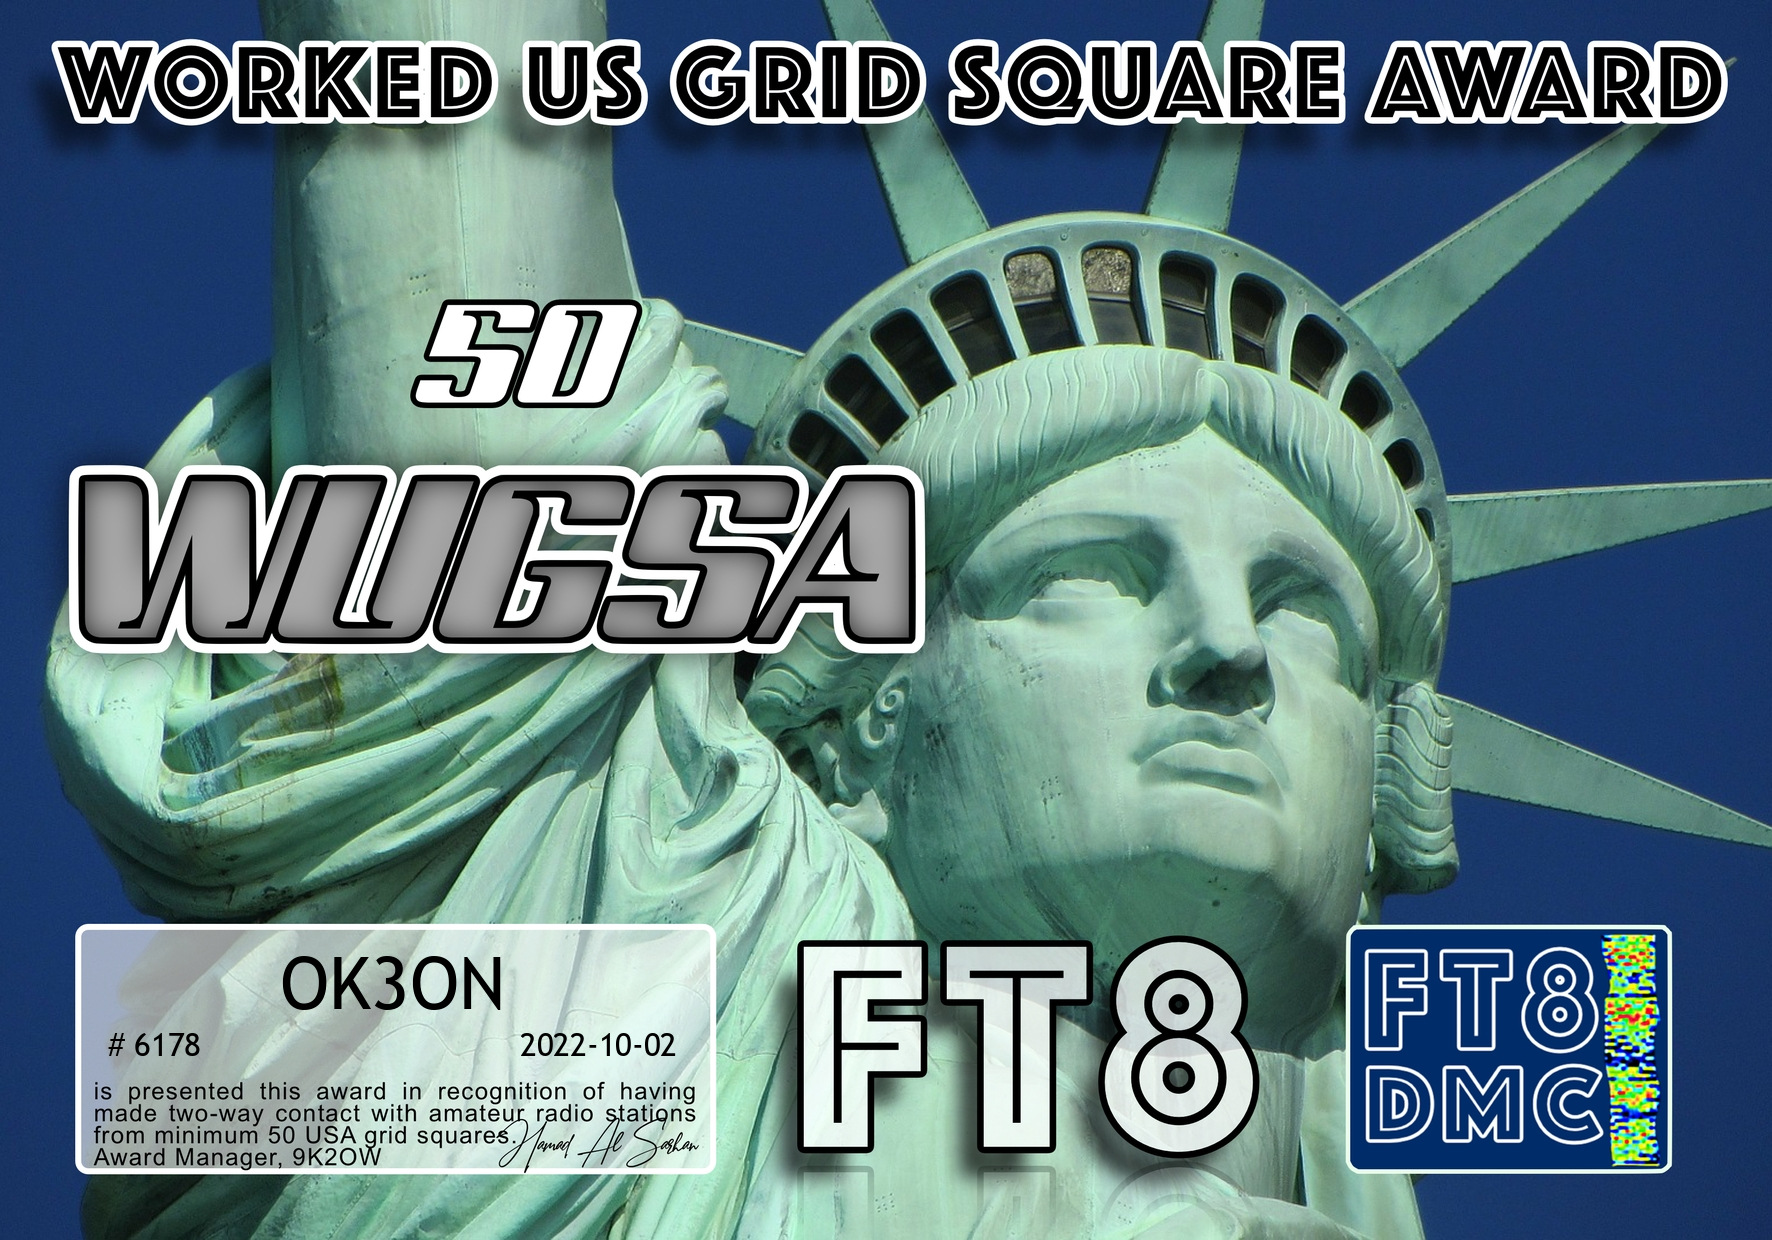 awards/OK3ON-WUGSA-50_FT8DMC.jpg